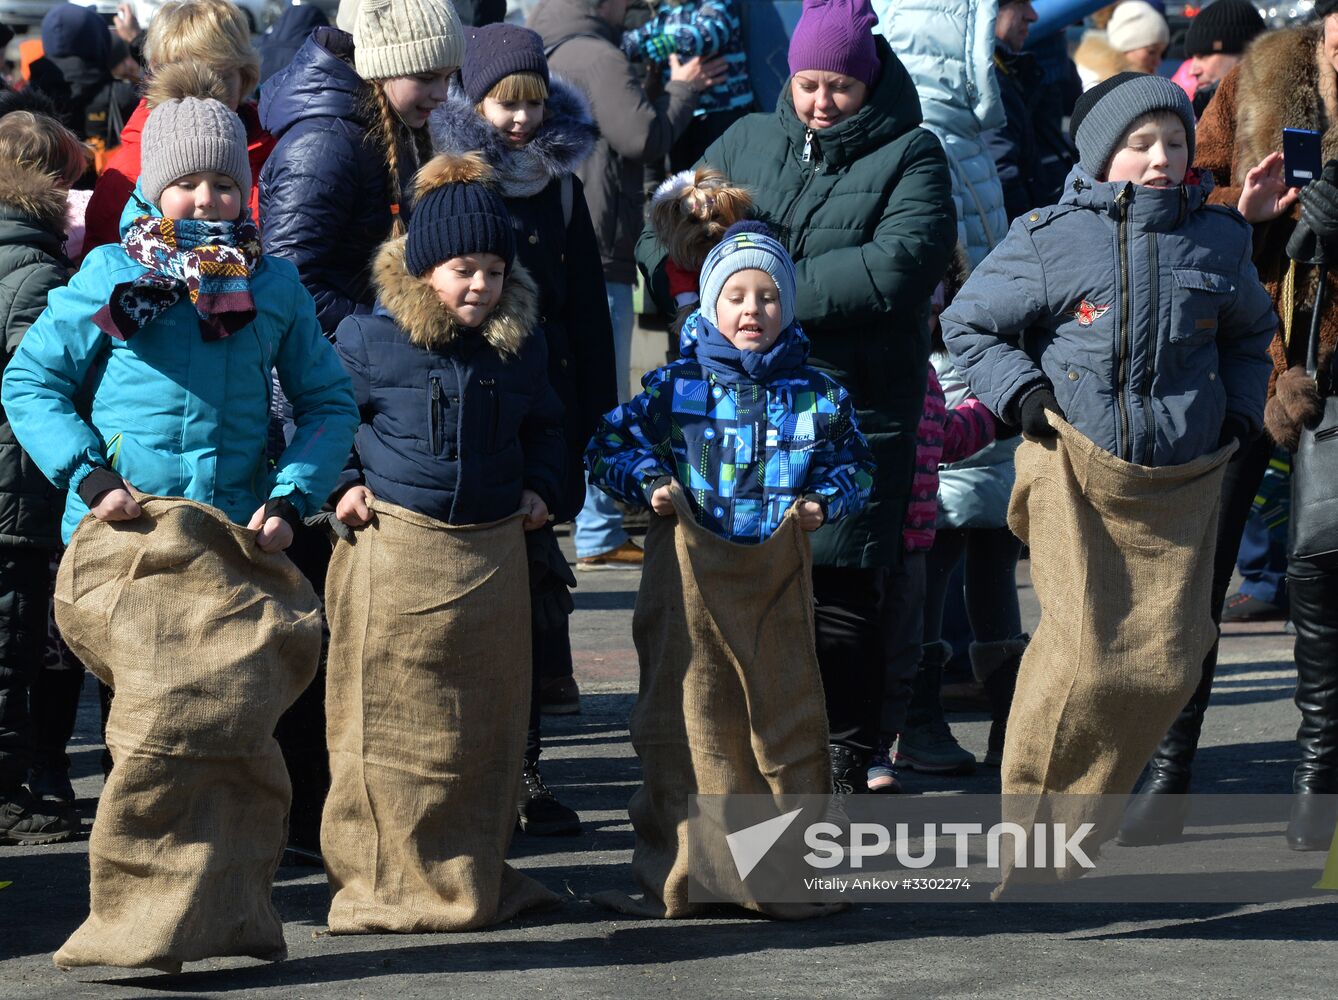 Celebration of Maslenitsa in Russian regions